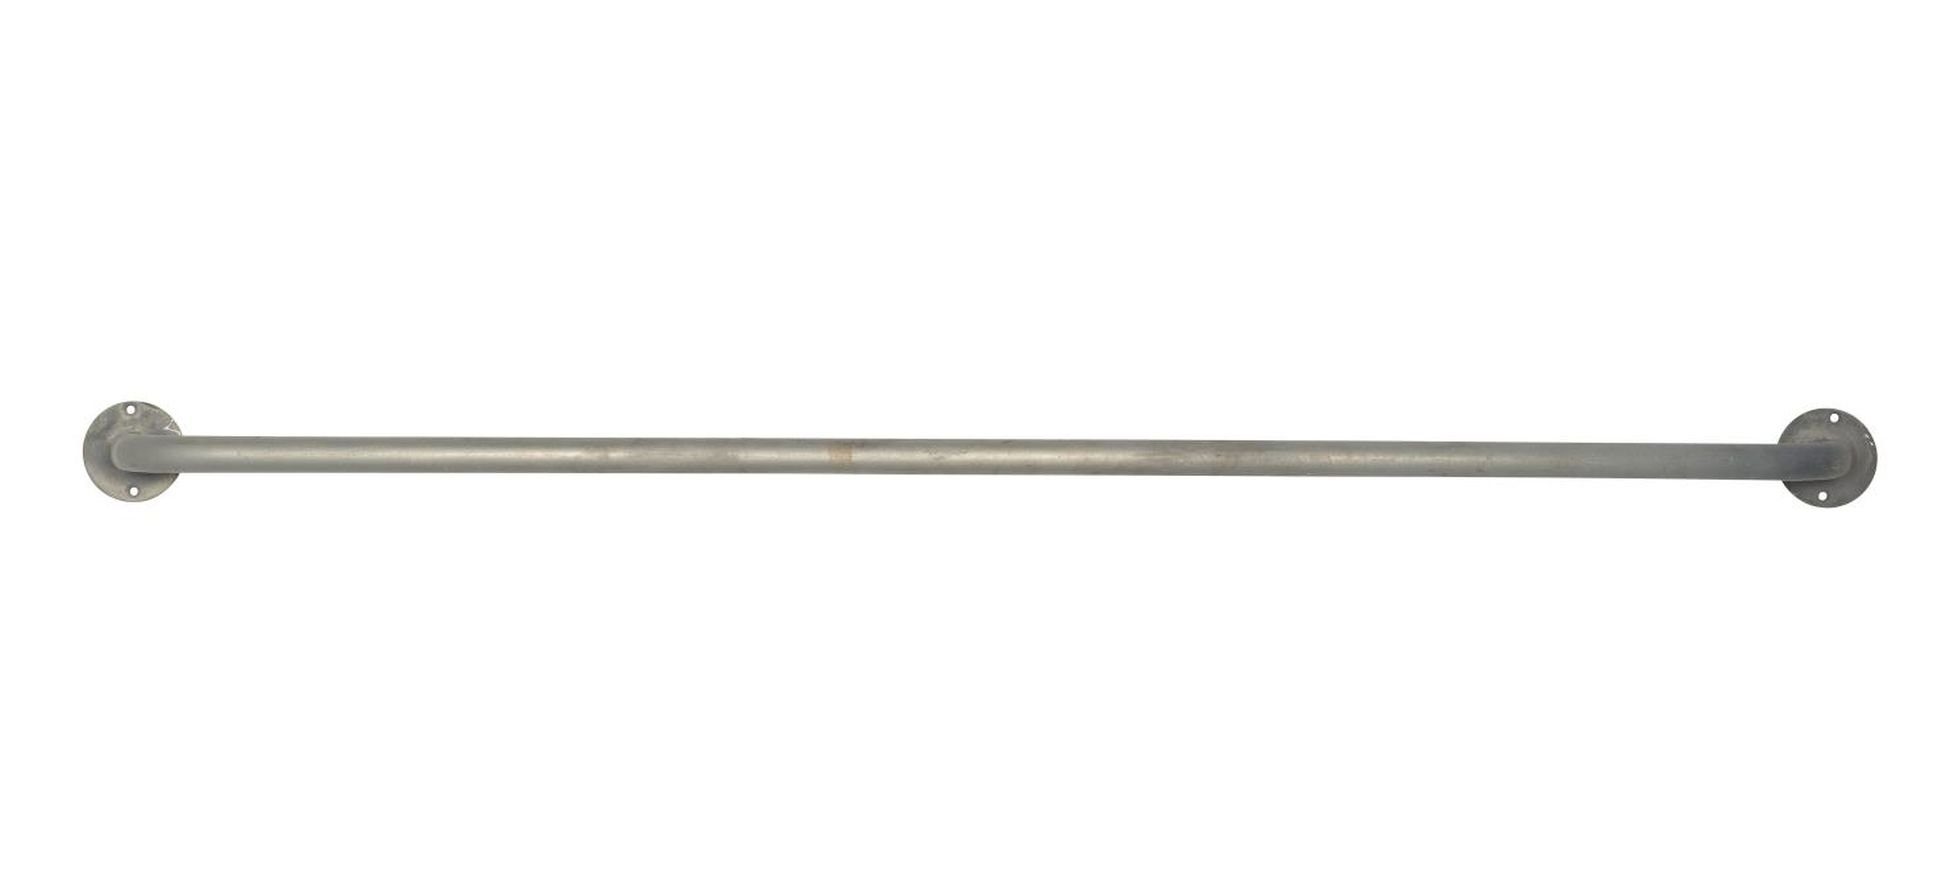 Ib Laursen Handtuchstange Hakenleiste Wandstange Handtuchstange Laursen 94cm 5782-18 Ib L Metall